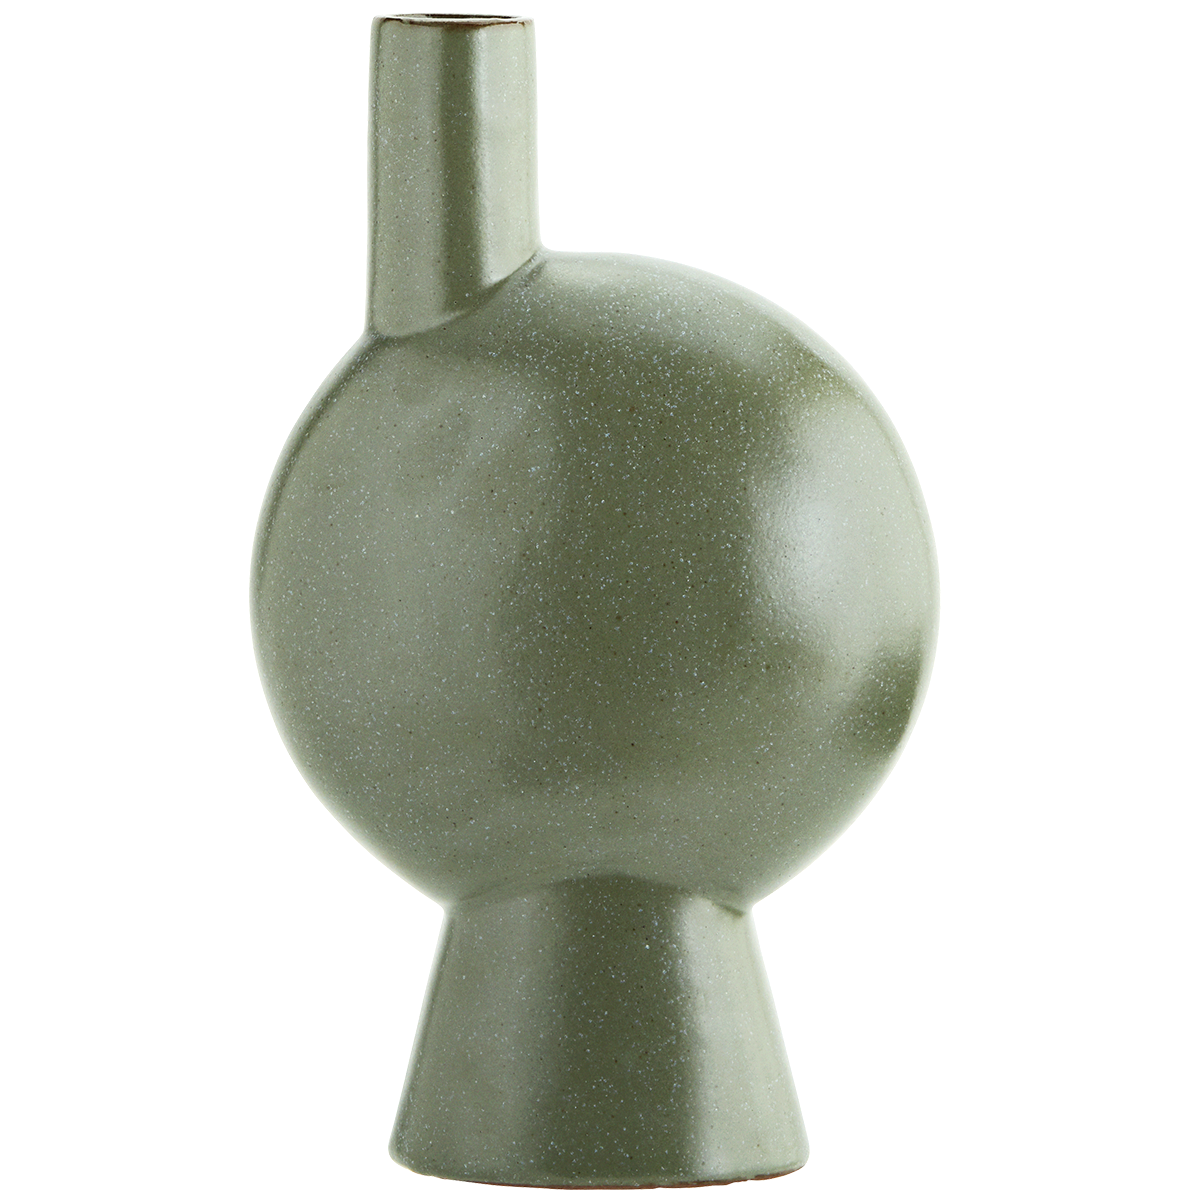 Stoneware Vase Green -
Madam Stoltz